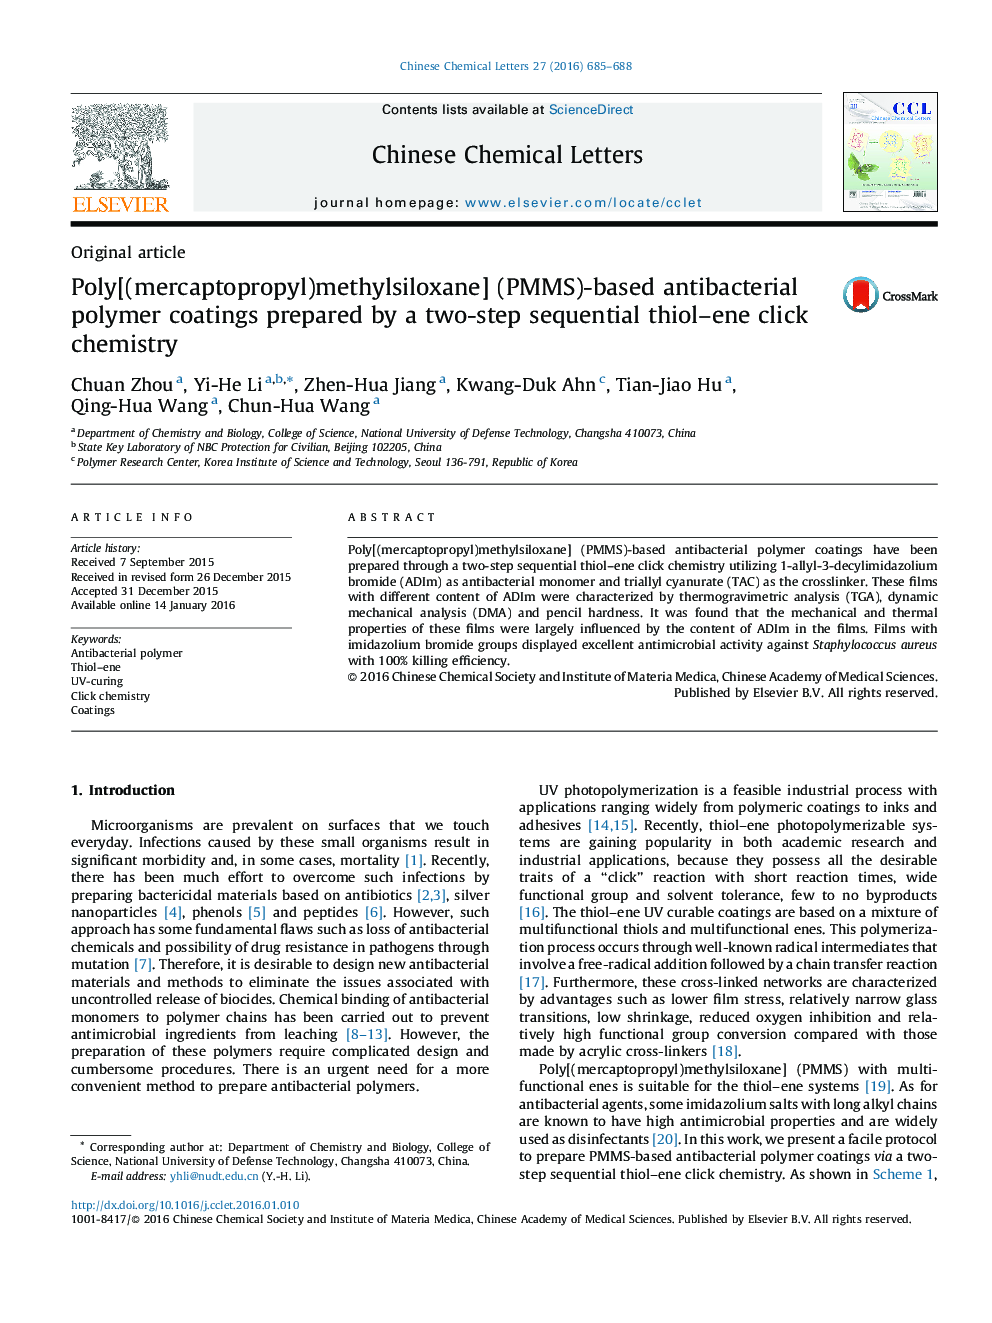 پوشش های پلیمری ضدباکتری مبتنی بر پلی [(mercaptopropyl) methylsiloxane] (PMMS) تهیه شده توسط دو مرحله متوالی شیمی thiol–ene click 